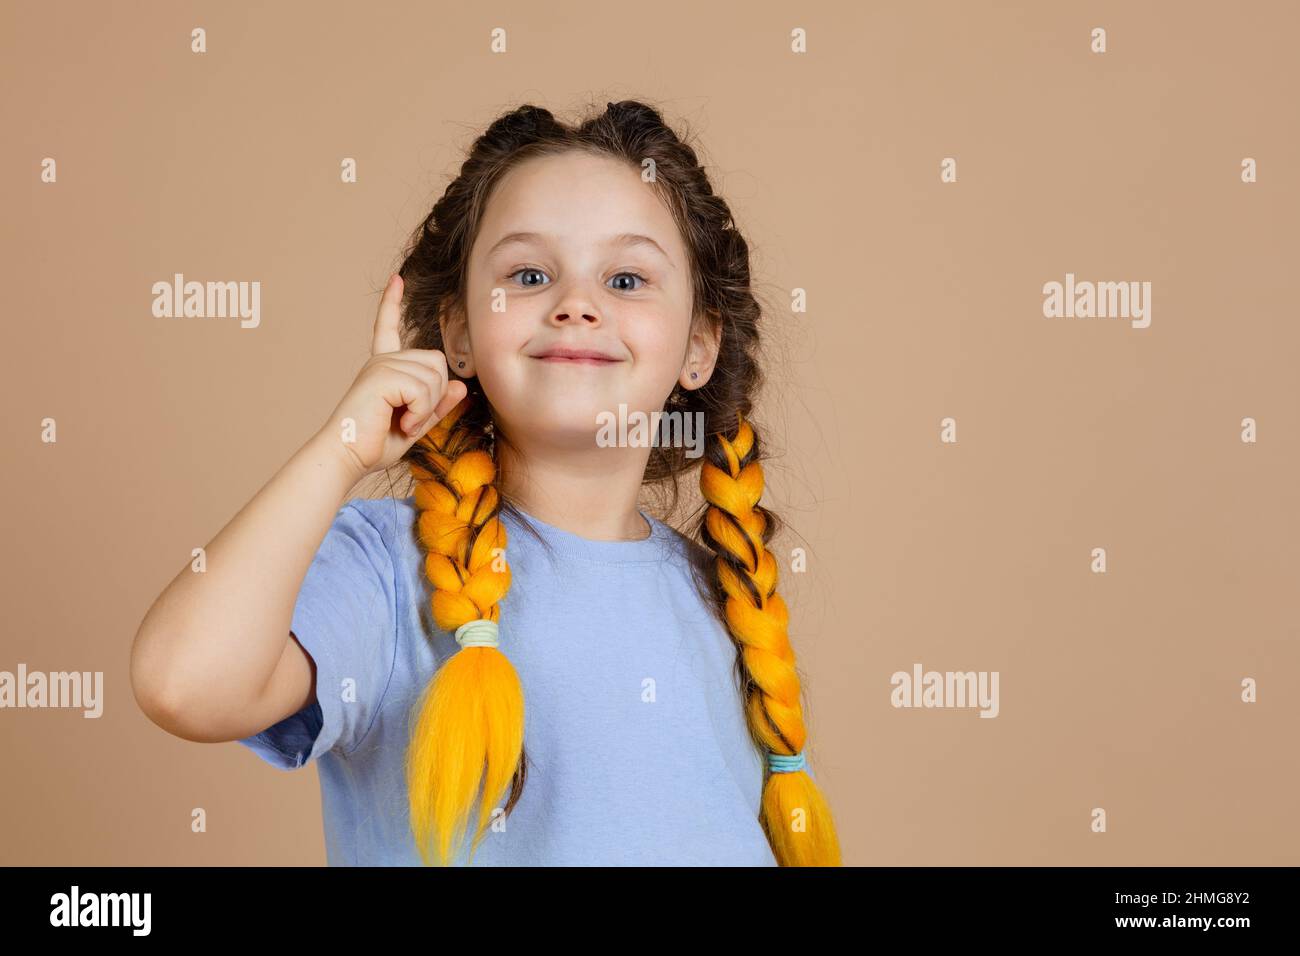 Petite fille intelligente avec des tresses kanekalon de couleur jaune montrant le doigt ayant le moment aha en raison de la grande idée apparaissant dans la tête sur fond beige Banque D'Images